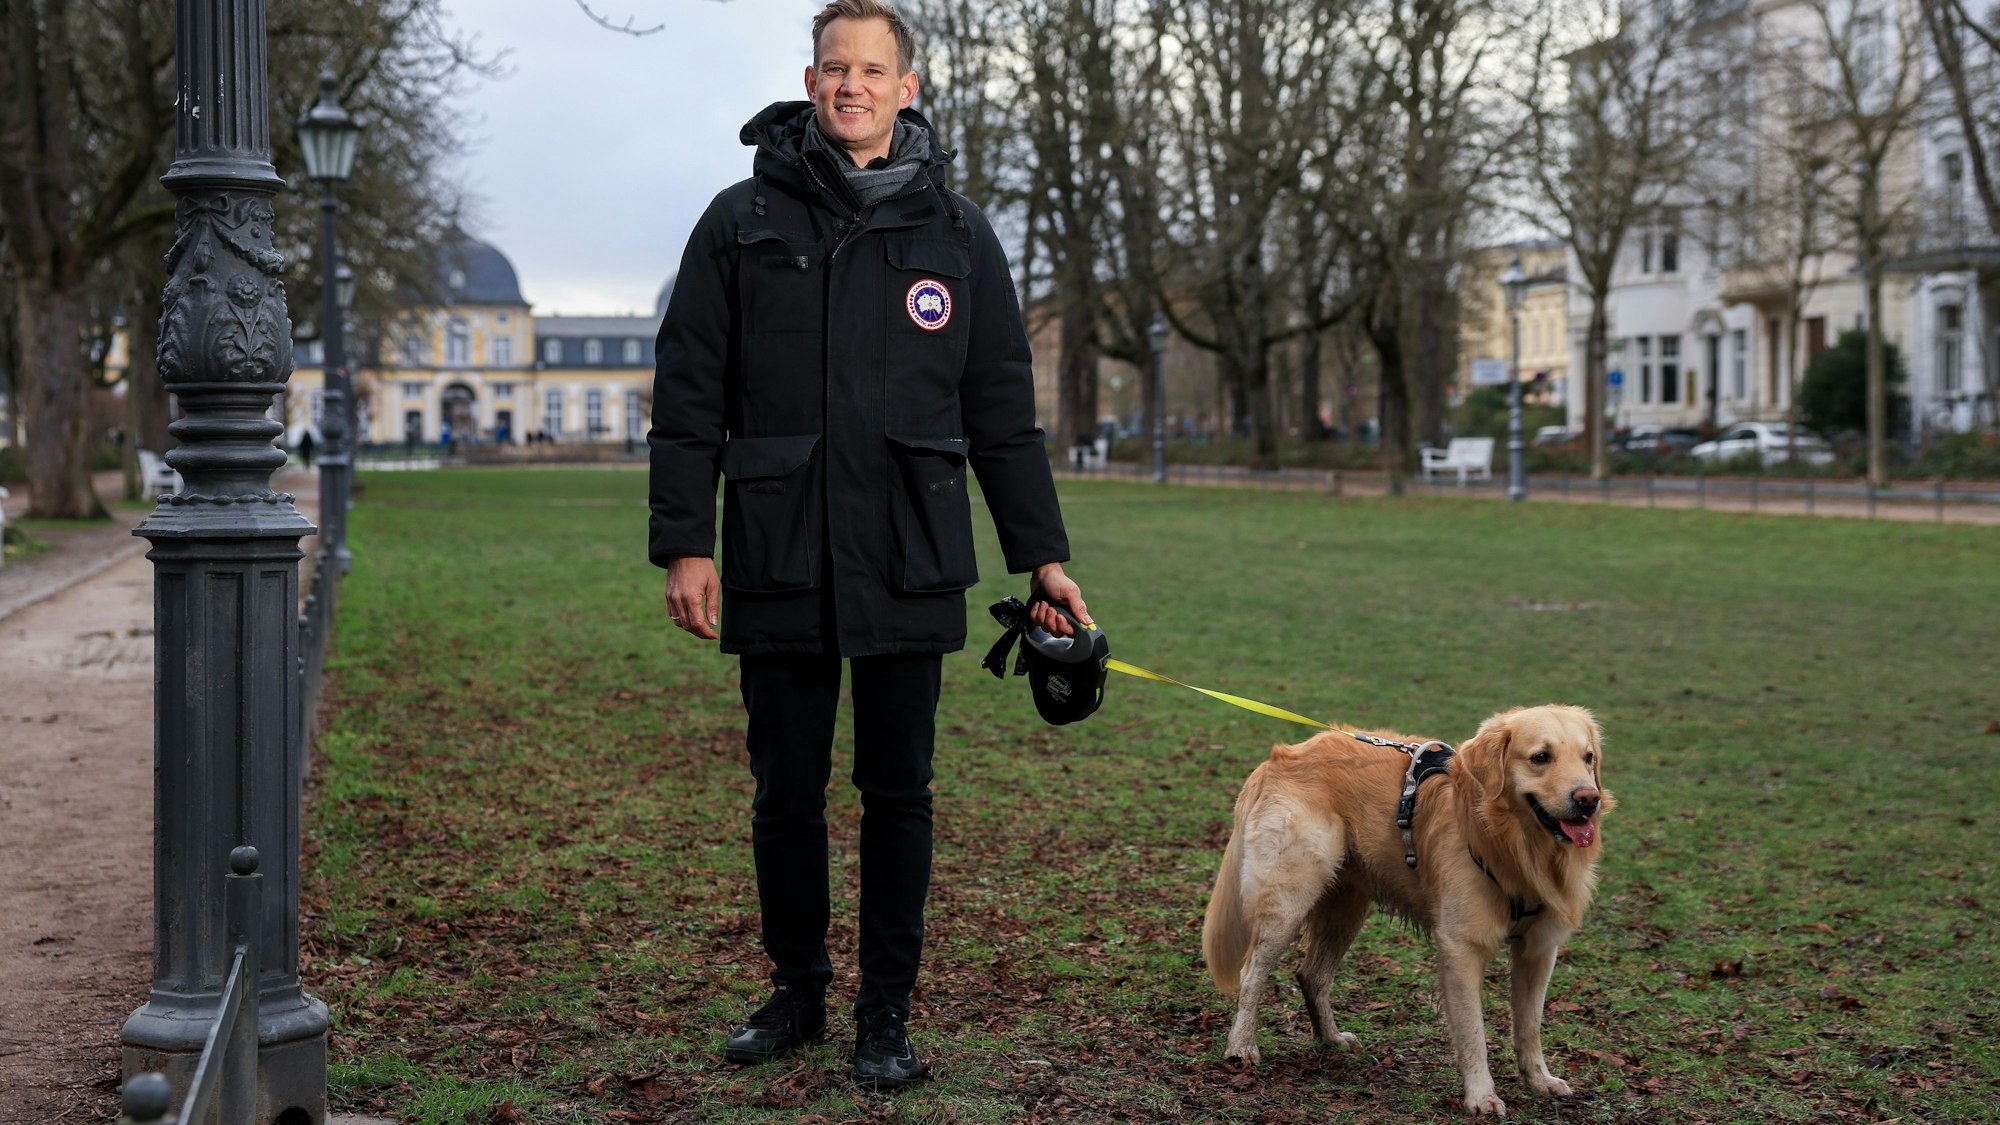 Prof. Dr. med. Hendrik Streeck ist ein deutscher Virologe. Der Mediziner ist seit Oktober 2019 Direktor des Institutes für Virologie am Universitätsklinikum Bonn und war Mitglied des Corona-Expertenrats der Bundesregierung.
Im Bild mit seinem Hund Sam.